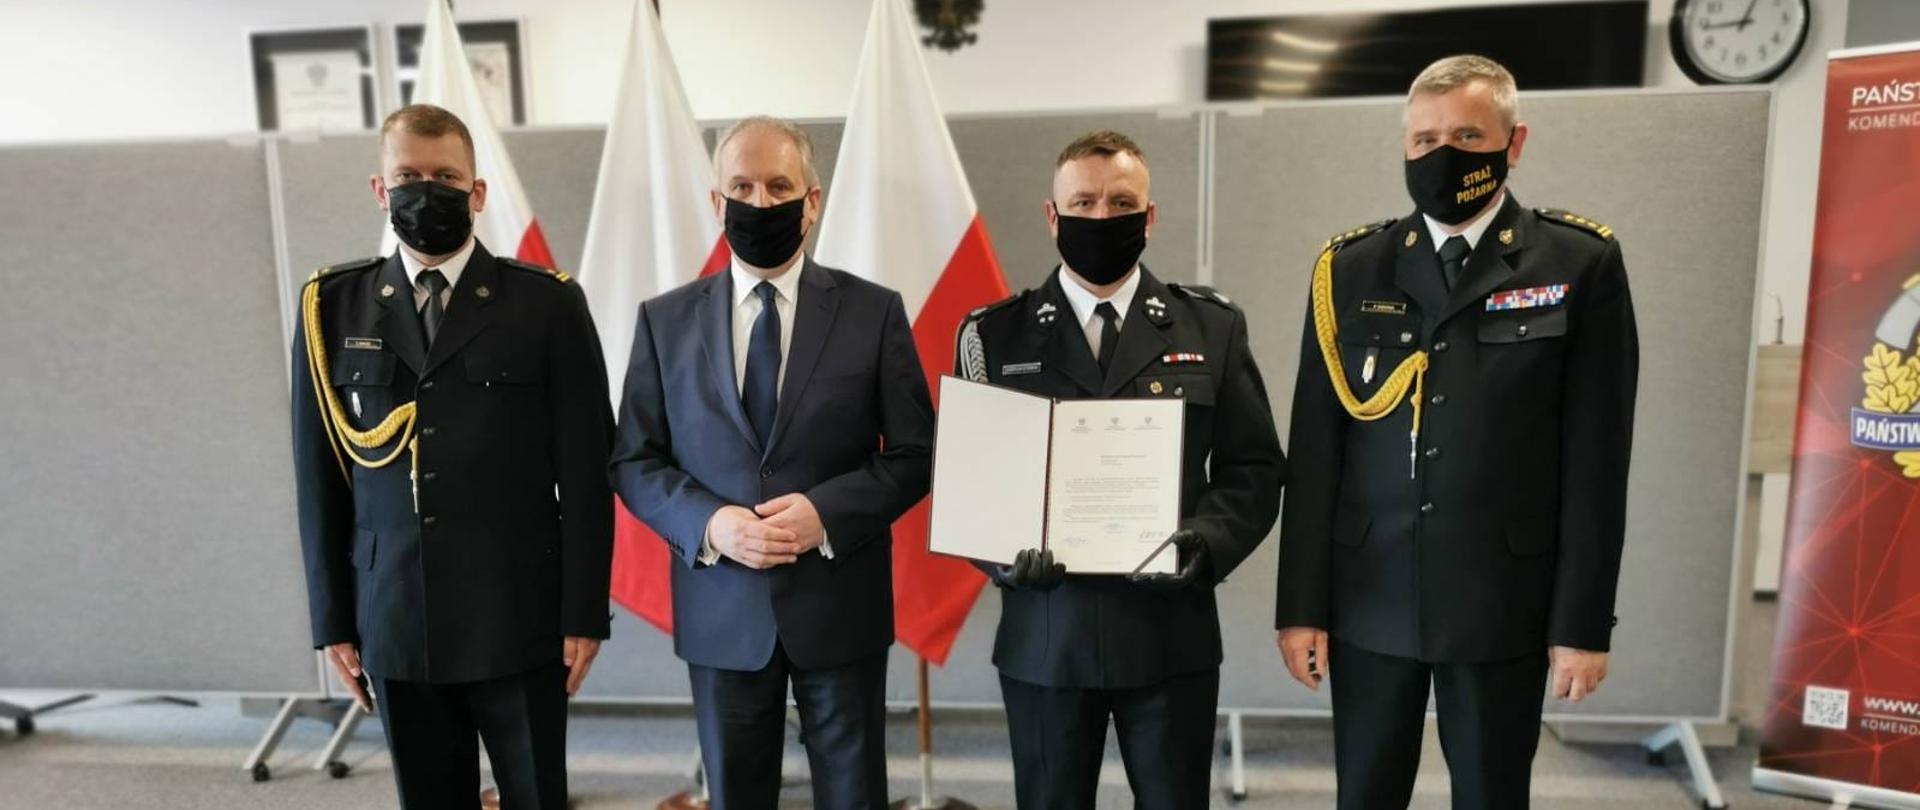 Na zdjęciu znajduje się 3 strażaków umundurowanych w mundury galowe oraz mężczyzna w granatowym garniturze. Strażak ubrany w mundur galowy OSP trzyma w rękach przed sobą dokument z promesą. Za mężczyznami ustawione są trzy flagi Polski.